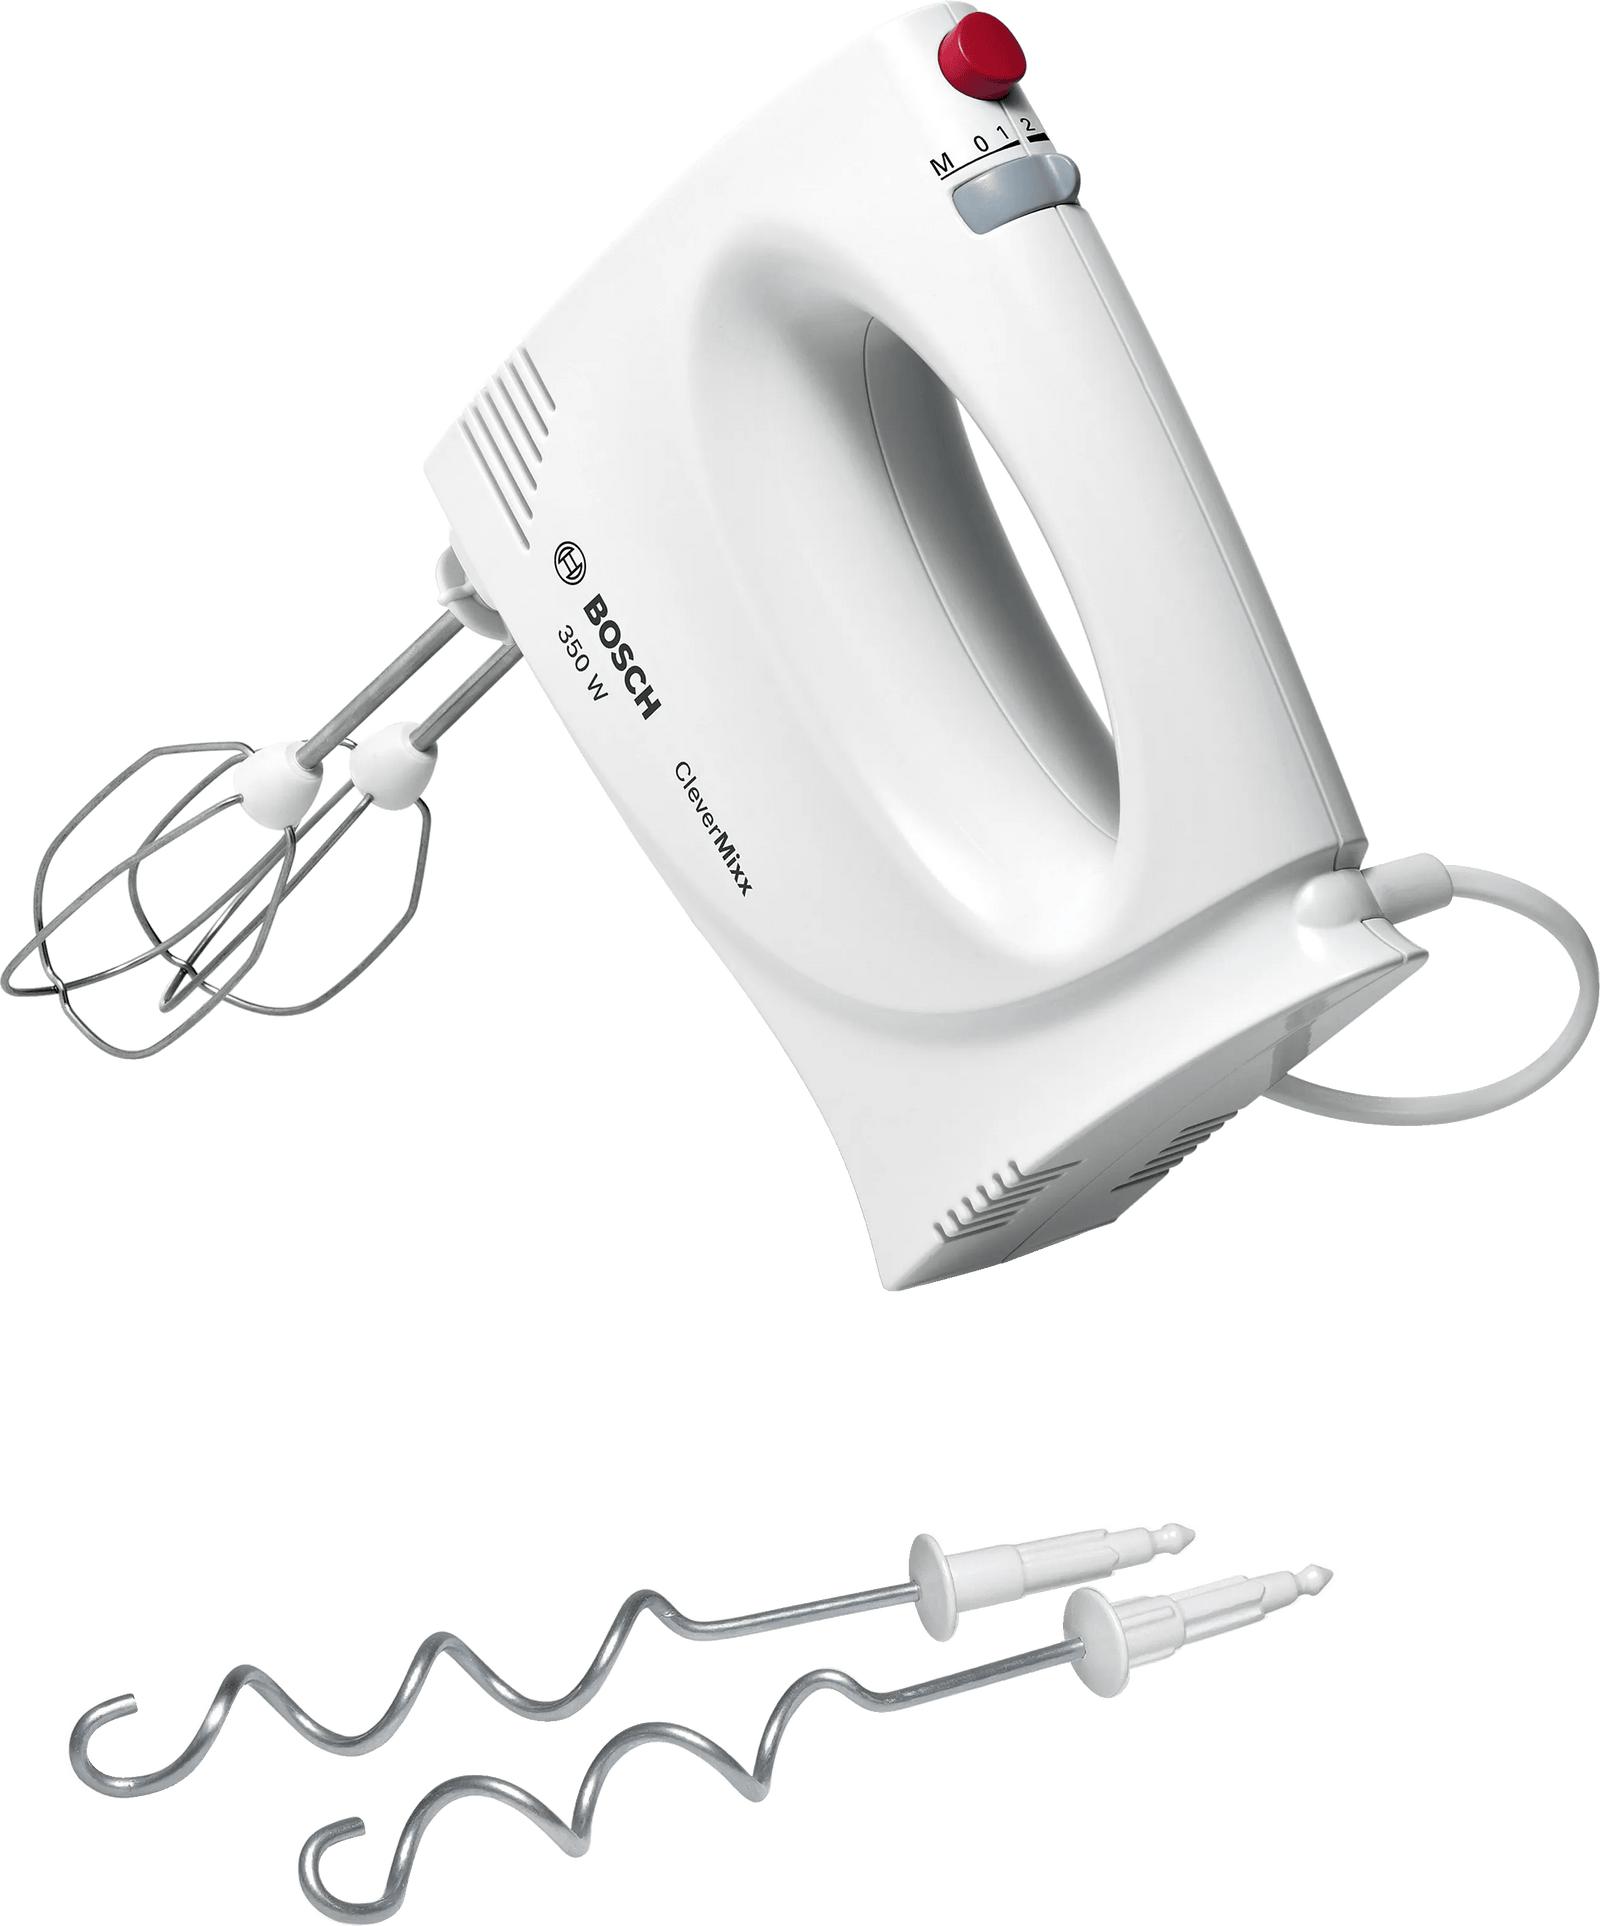 Bosch Hand Mixer CleverMixx 350w in White